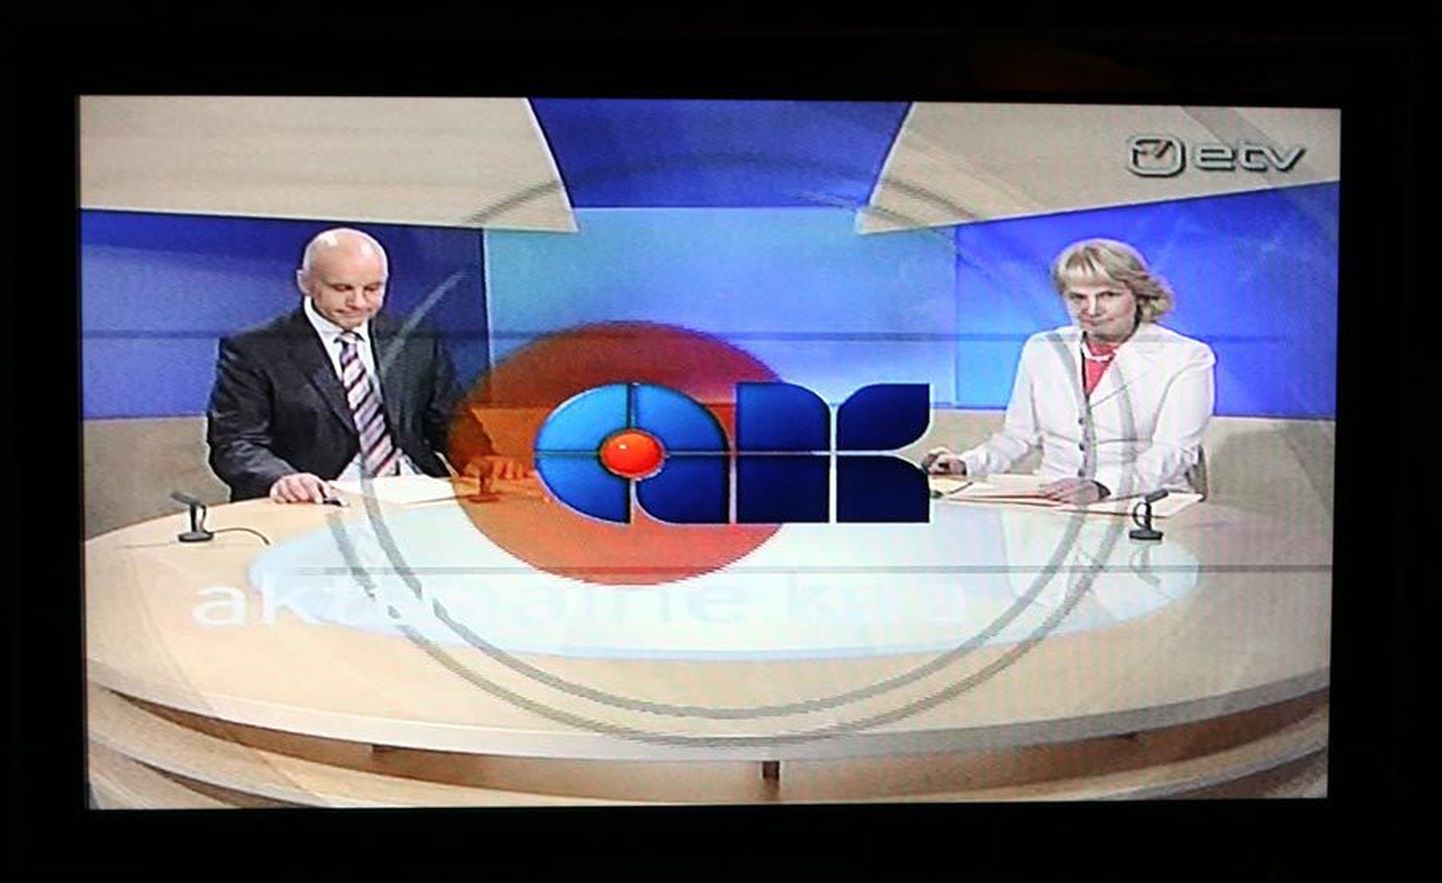 Uudisteankruid hakkas AK diktorite asemel kasutama 2001. aastal. Pildil on praegused uudisteankrud Aarne Rannamäe ja Astrid Kannel.